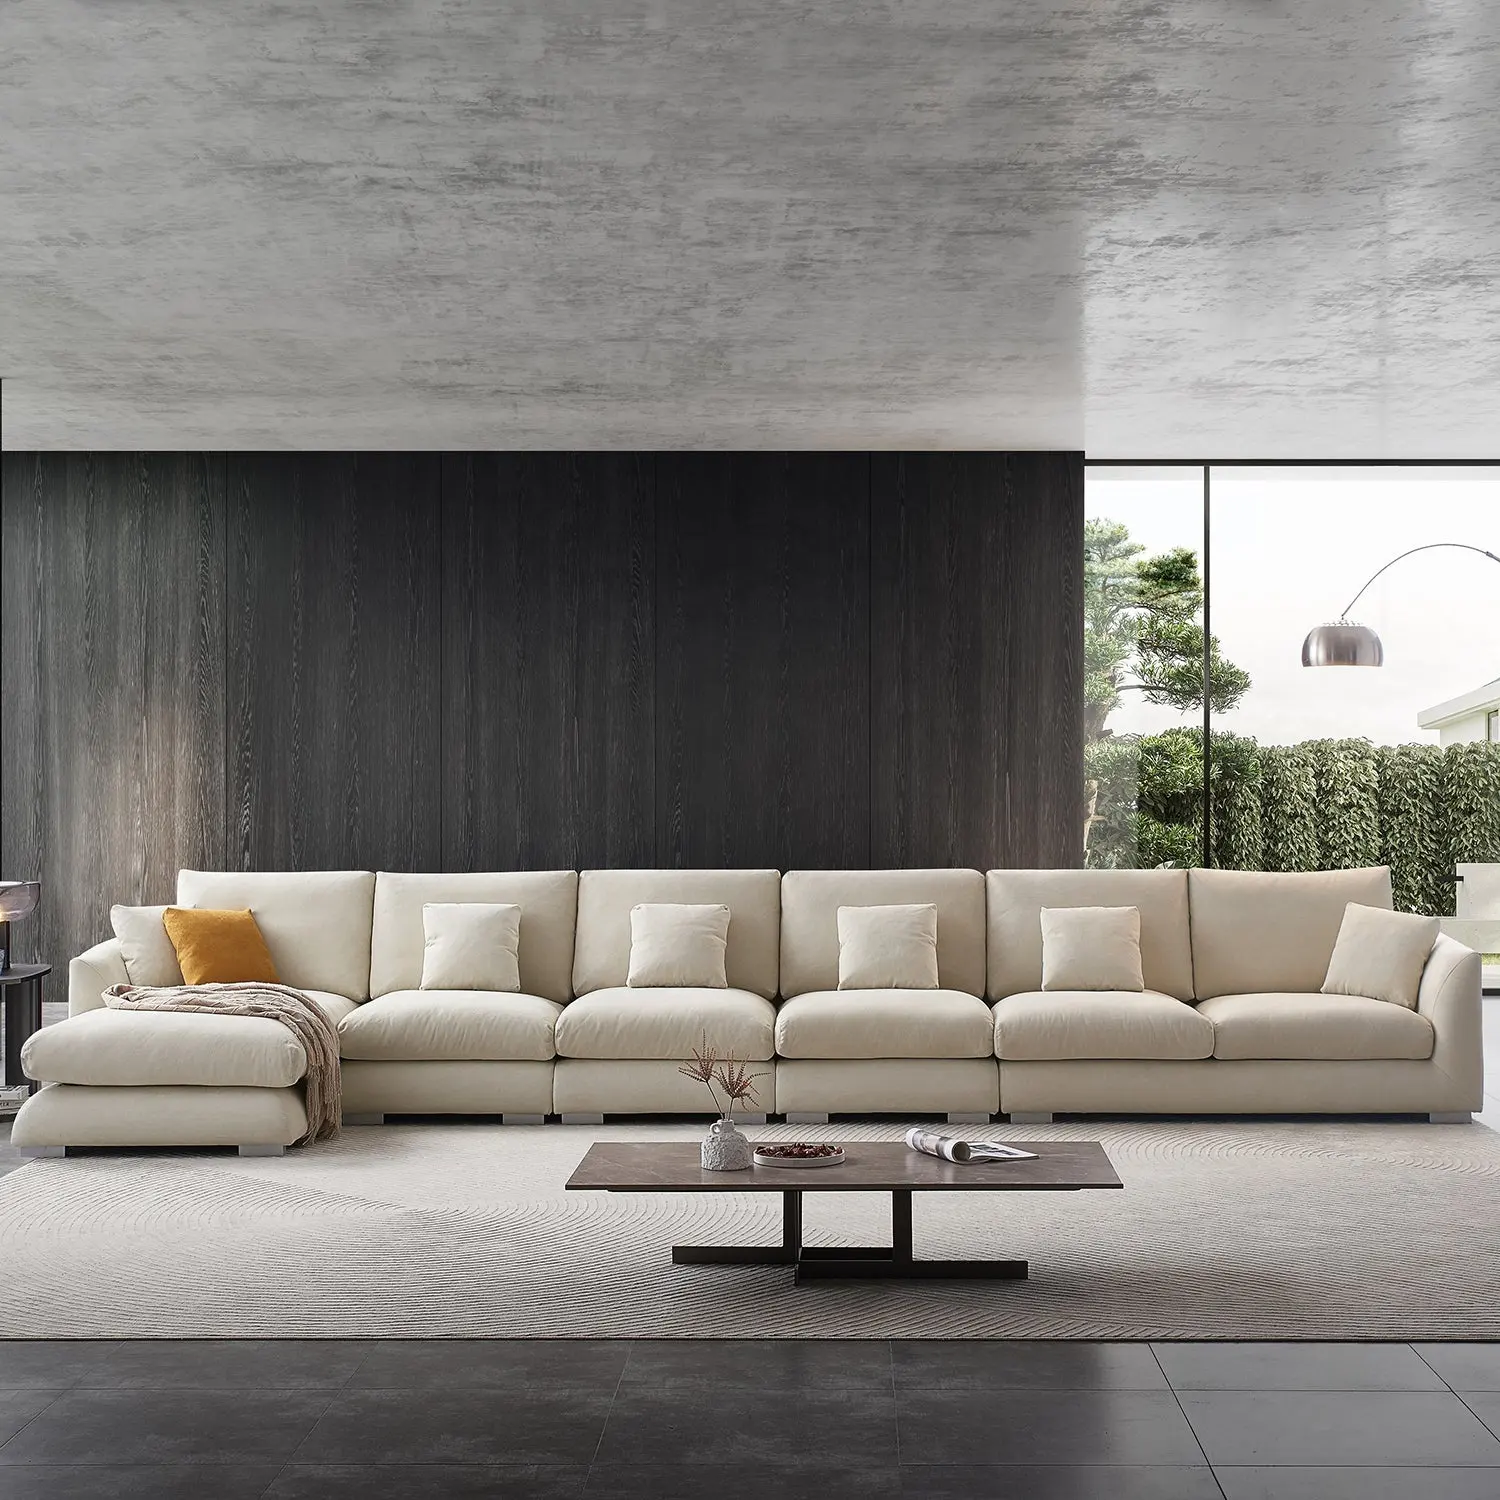 أريكة بسيطة عصرية مقسمة أريكة بأشكال بسيطة أريكة ريشة تصميمات أريكة سحابية أثاث غرفة معيشة